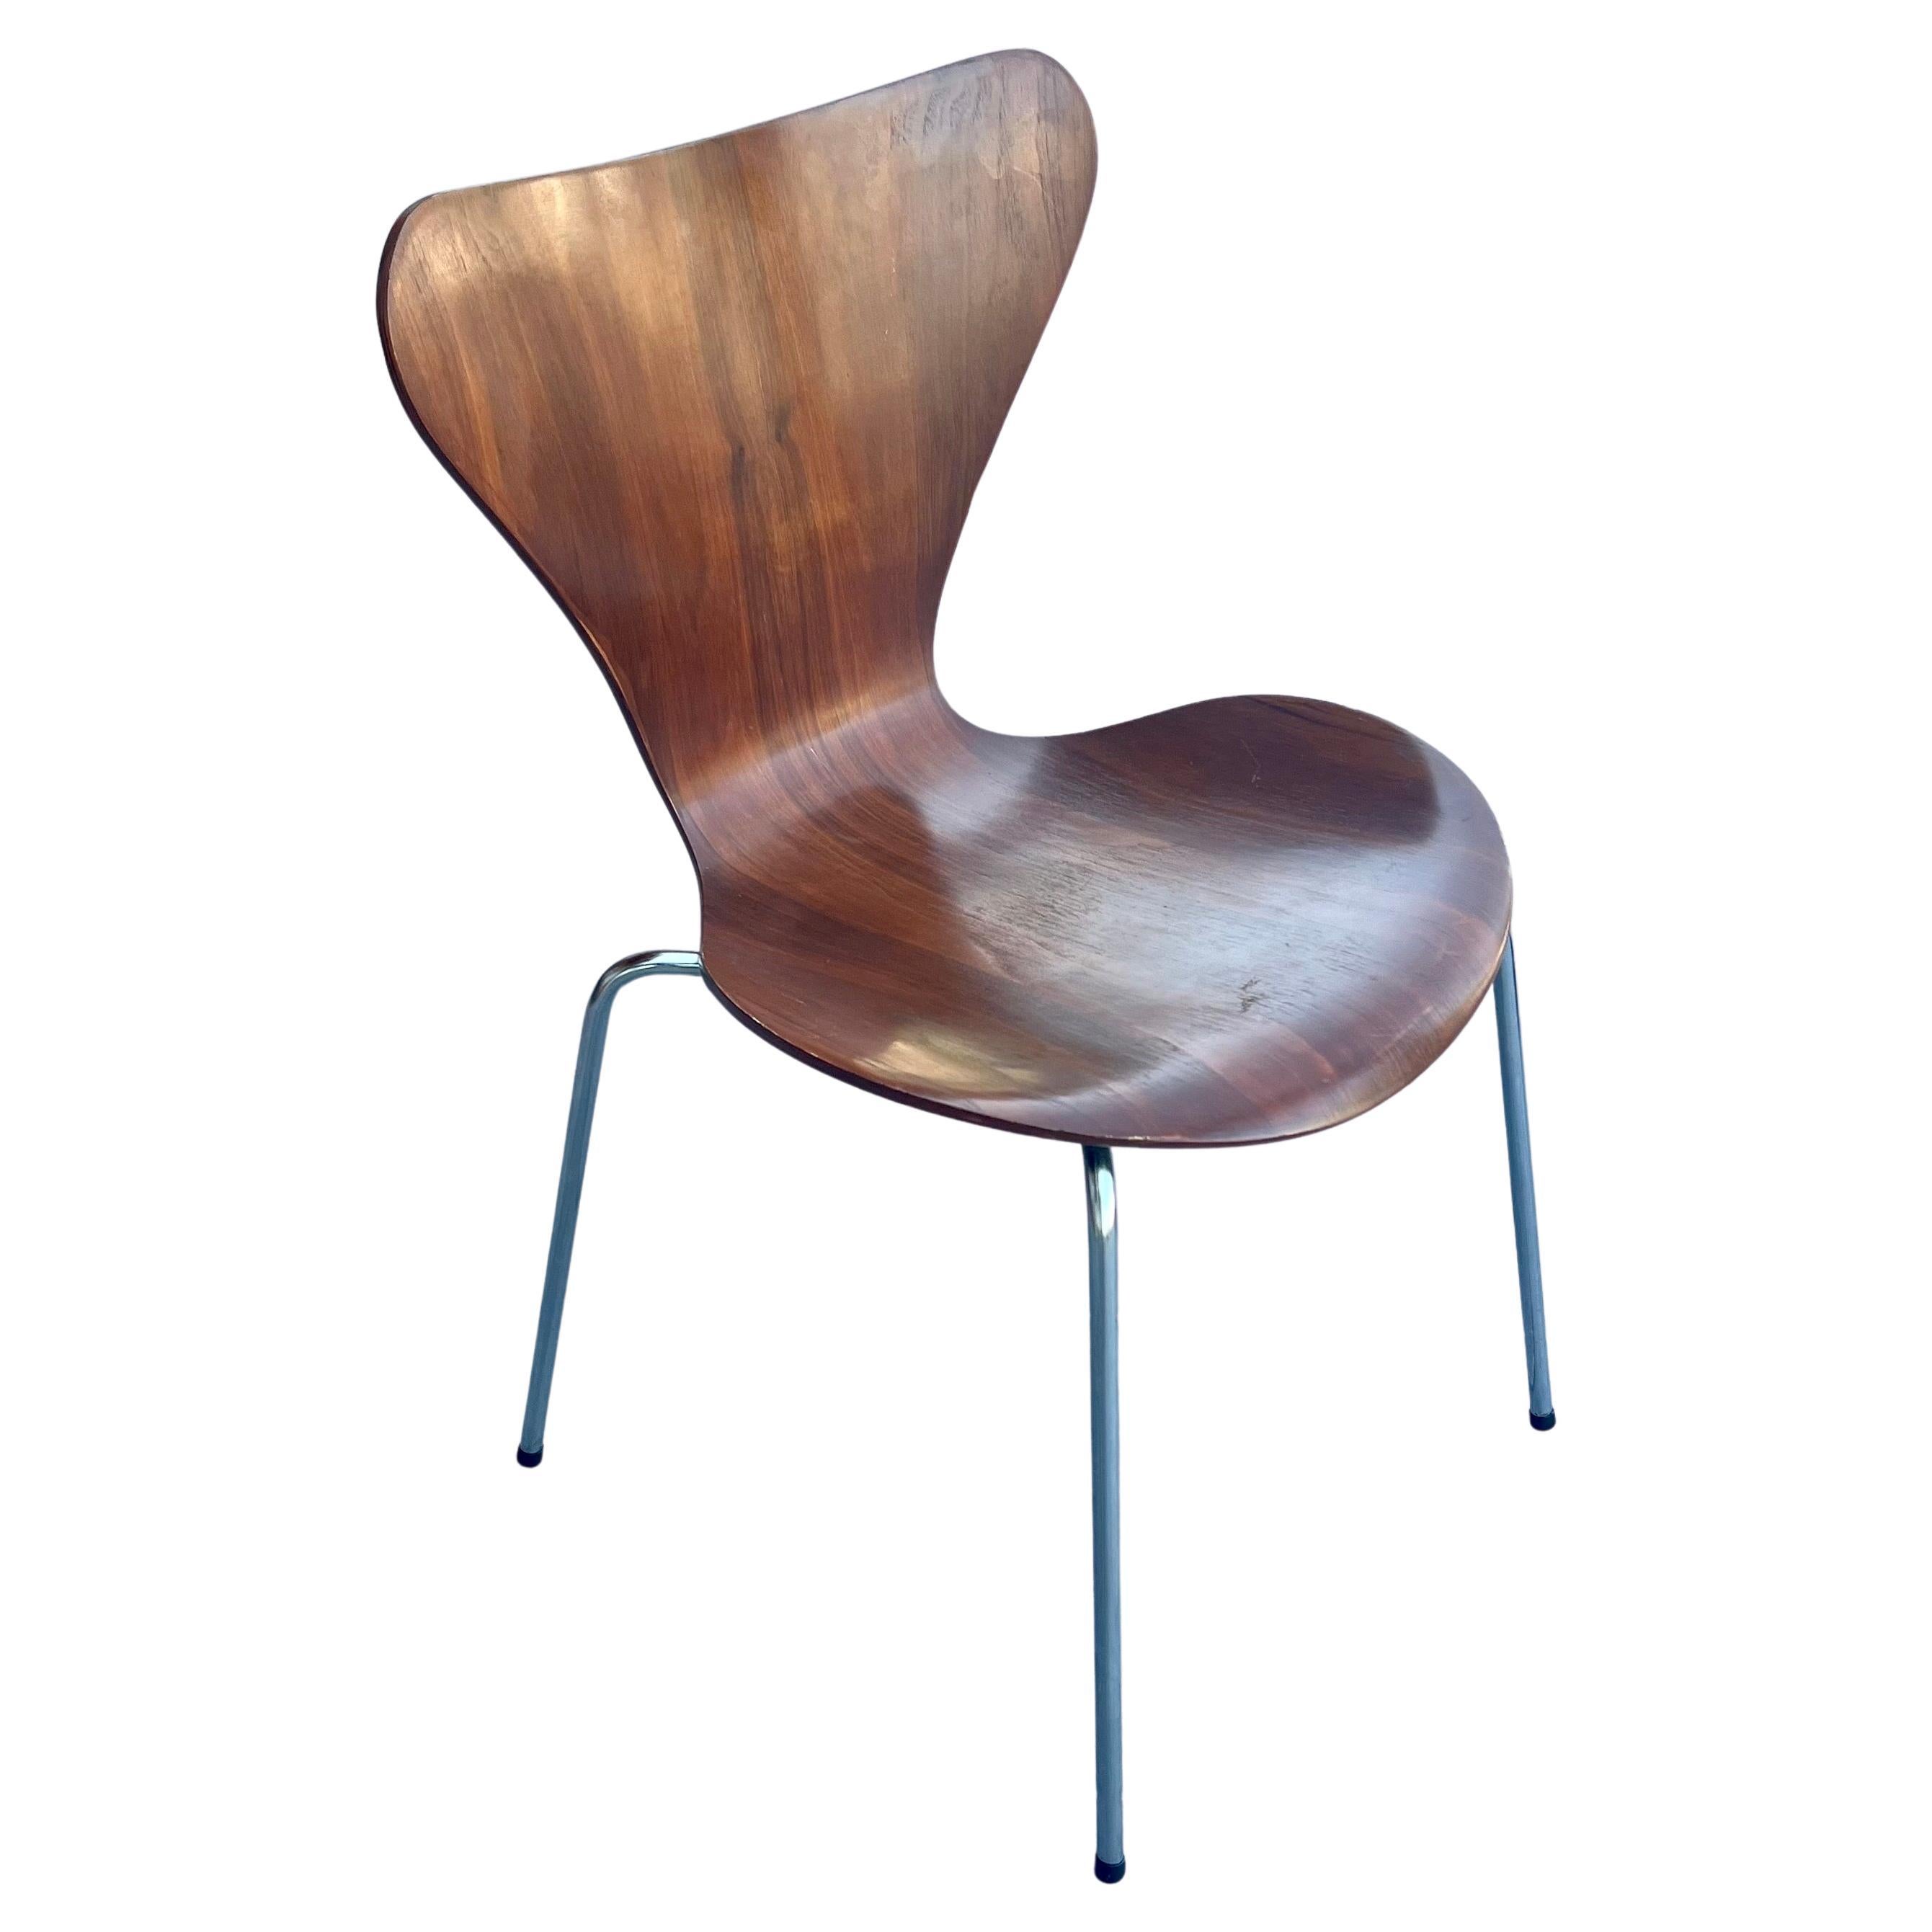 Danish Modern Series 7 Chair by Arne Jacobsen Dark Teak Fritz Hansen